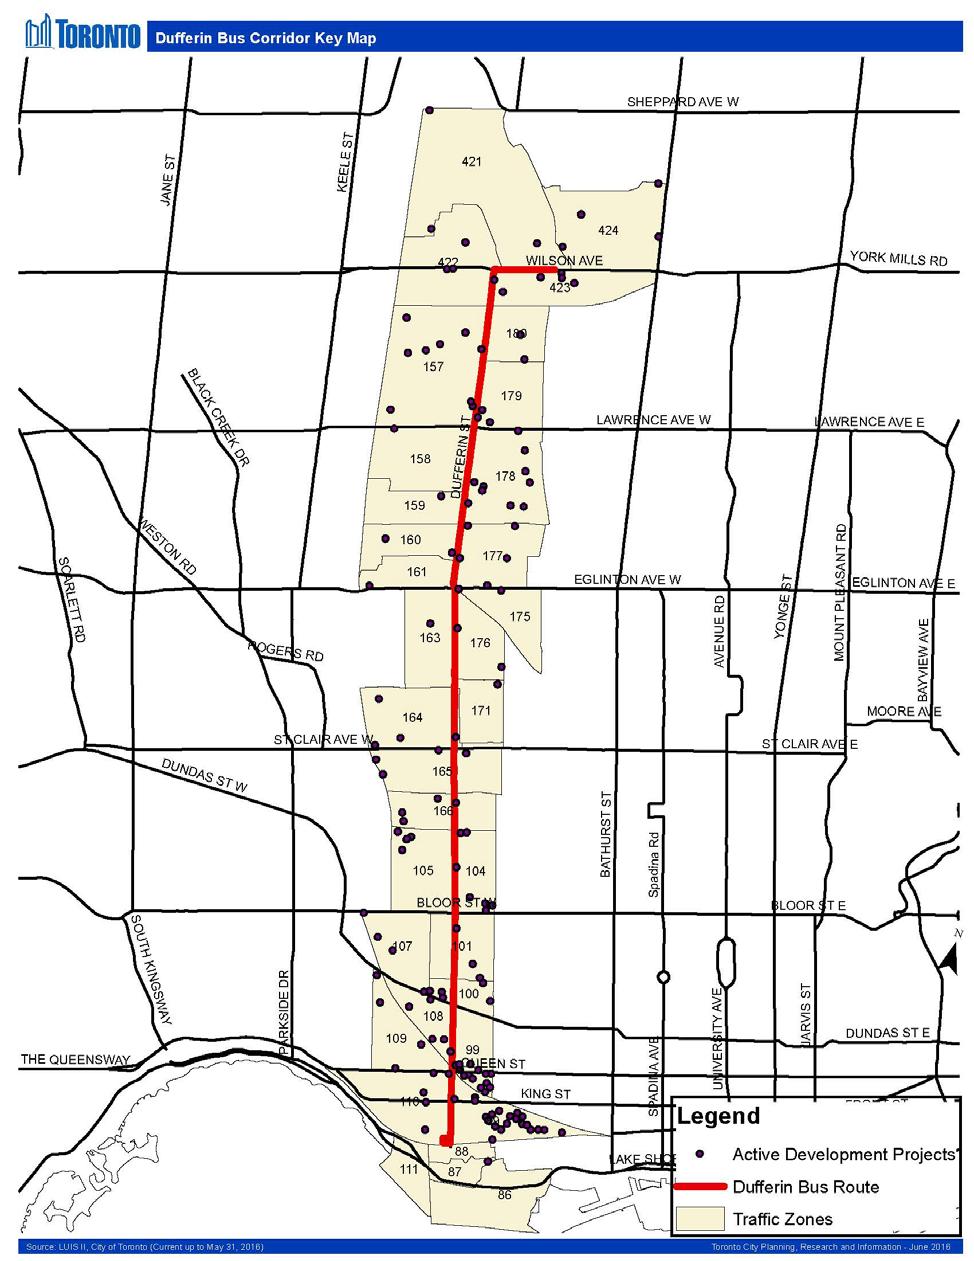 Appendix D: Dufferin Bus Corridor Key Map Improve